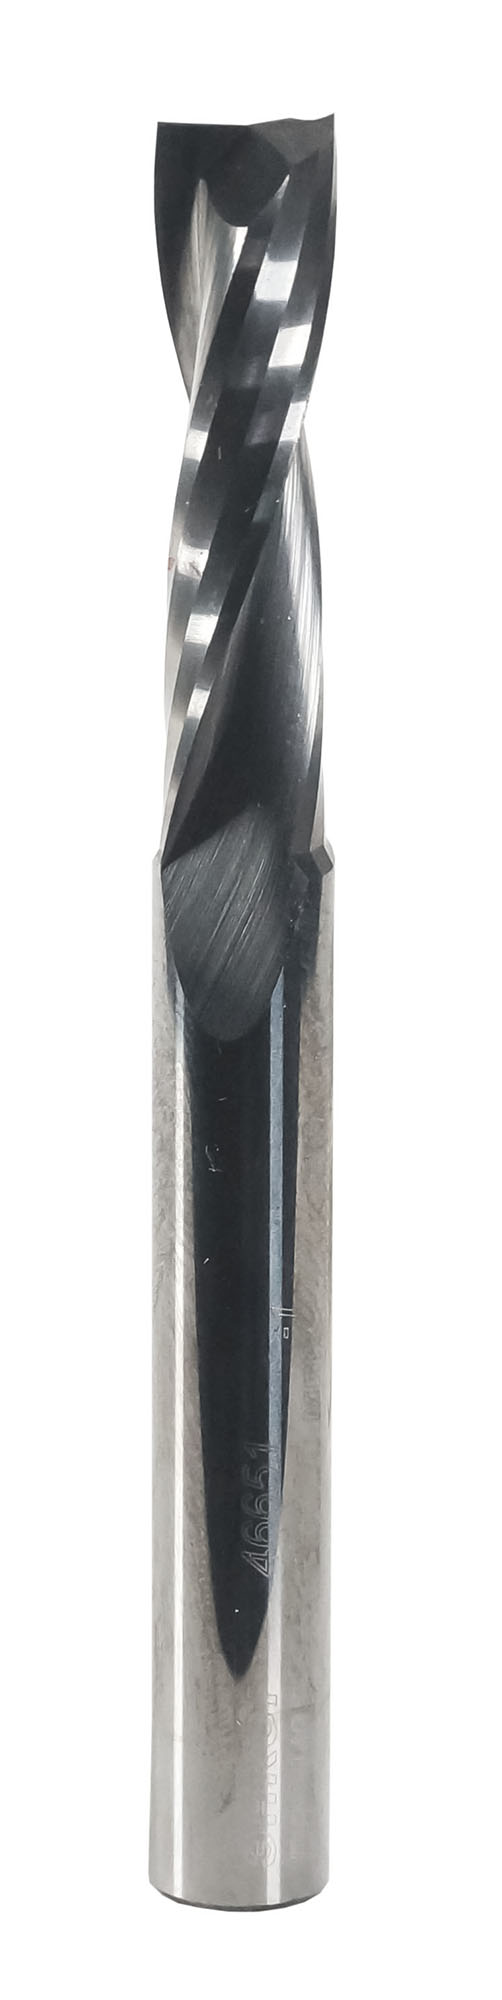 Фреза спиральная твердосплавная Энкор Z2 верхний рез ф8х32 мм хв.8 46651 фреза wpw pfm8192 копир сменные ножи верхний подшипник d19 b50 z2 хвостовик 12s pfm8192